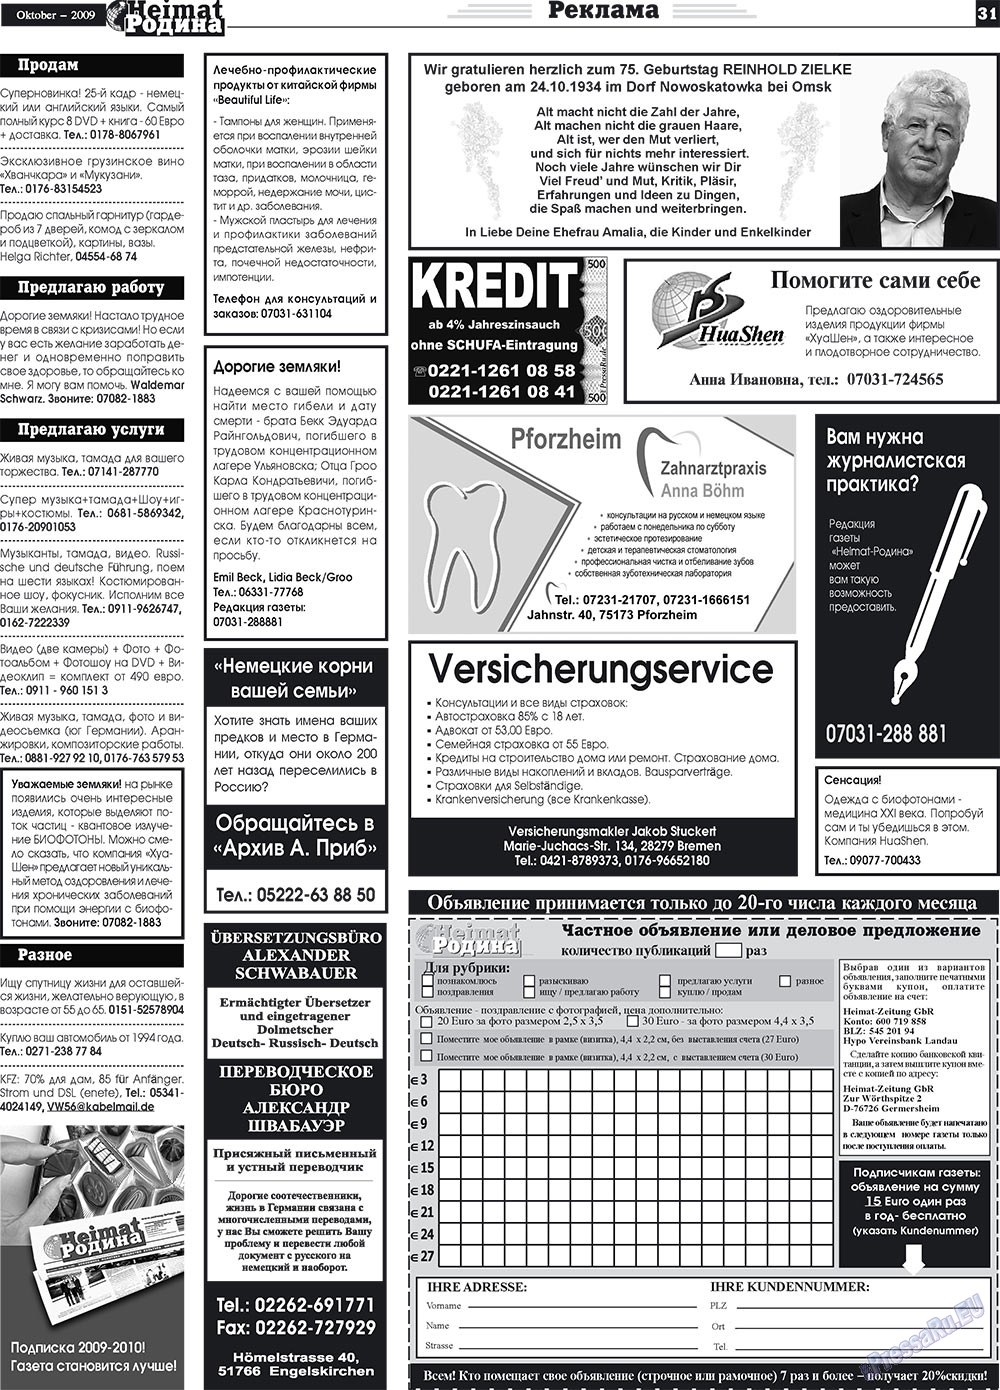 Heimat-Родина (газета). 2009 год, номер 10, стр. 31